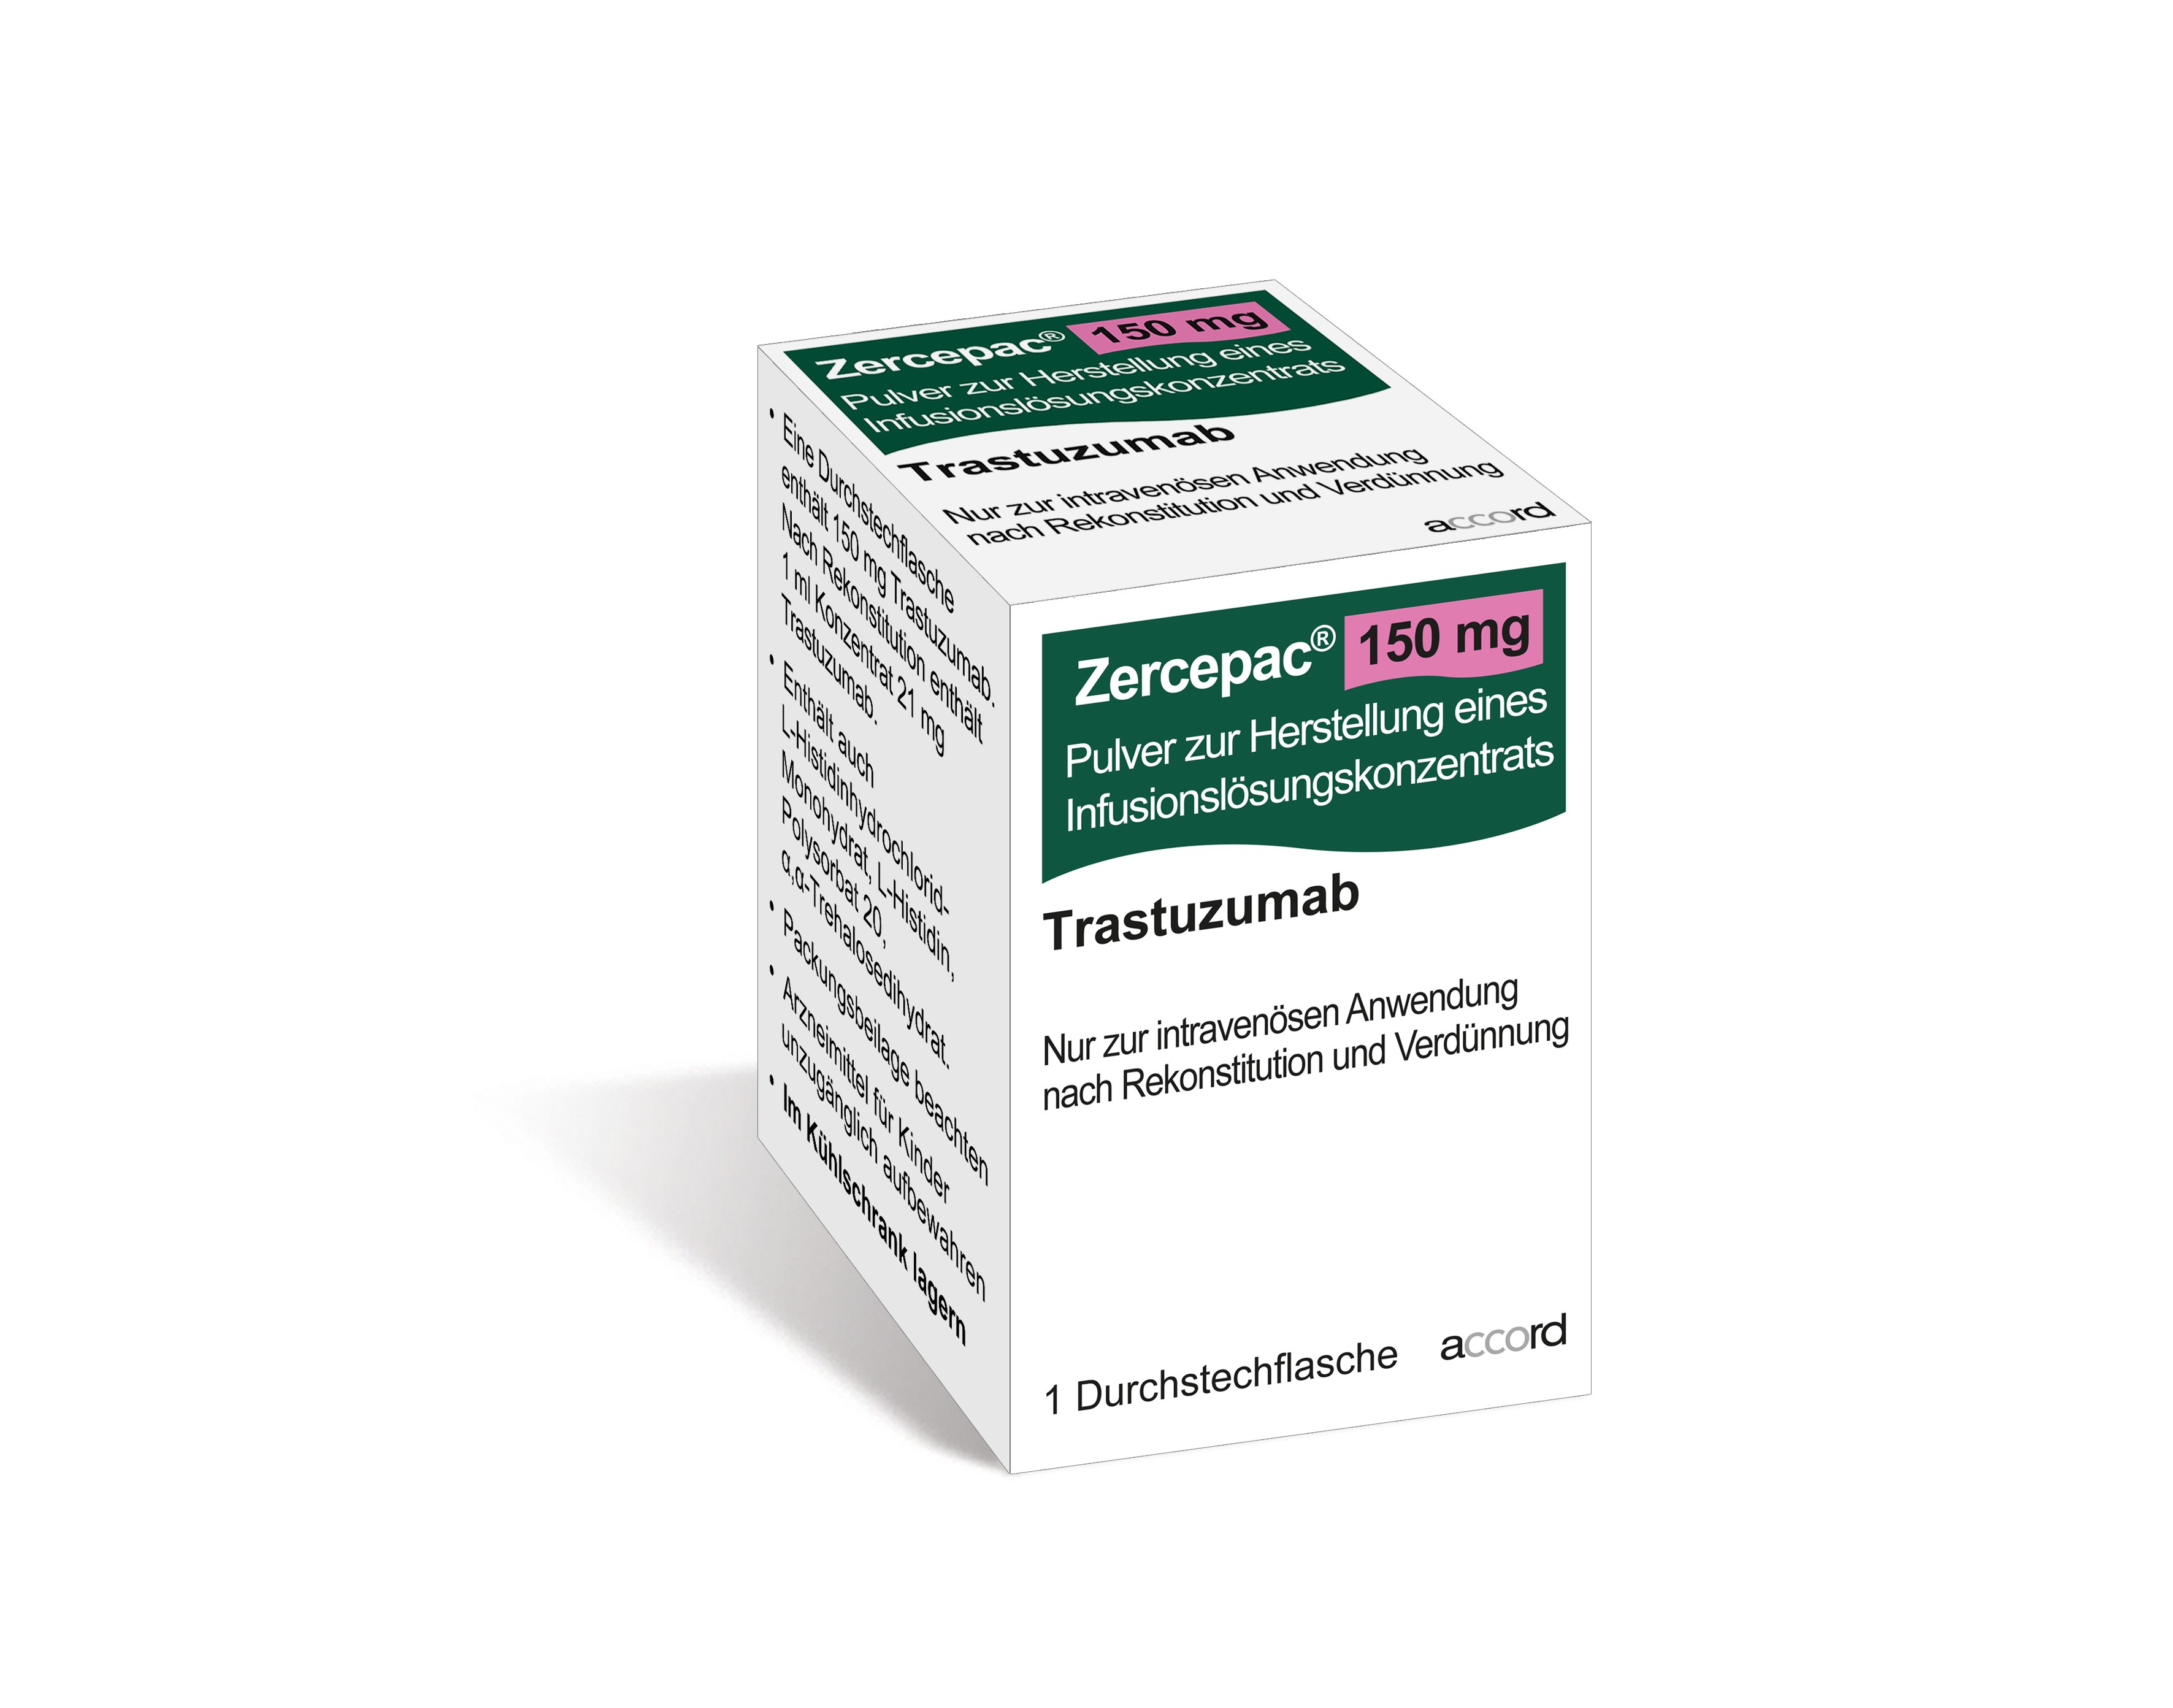 Accord Packshot Zercepac 150 mg